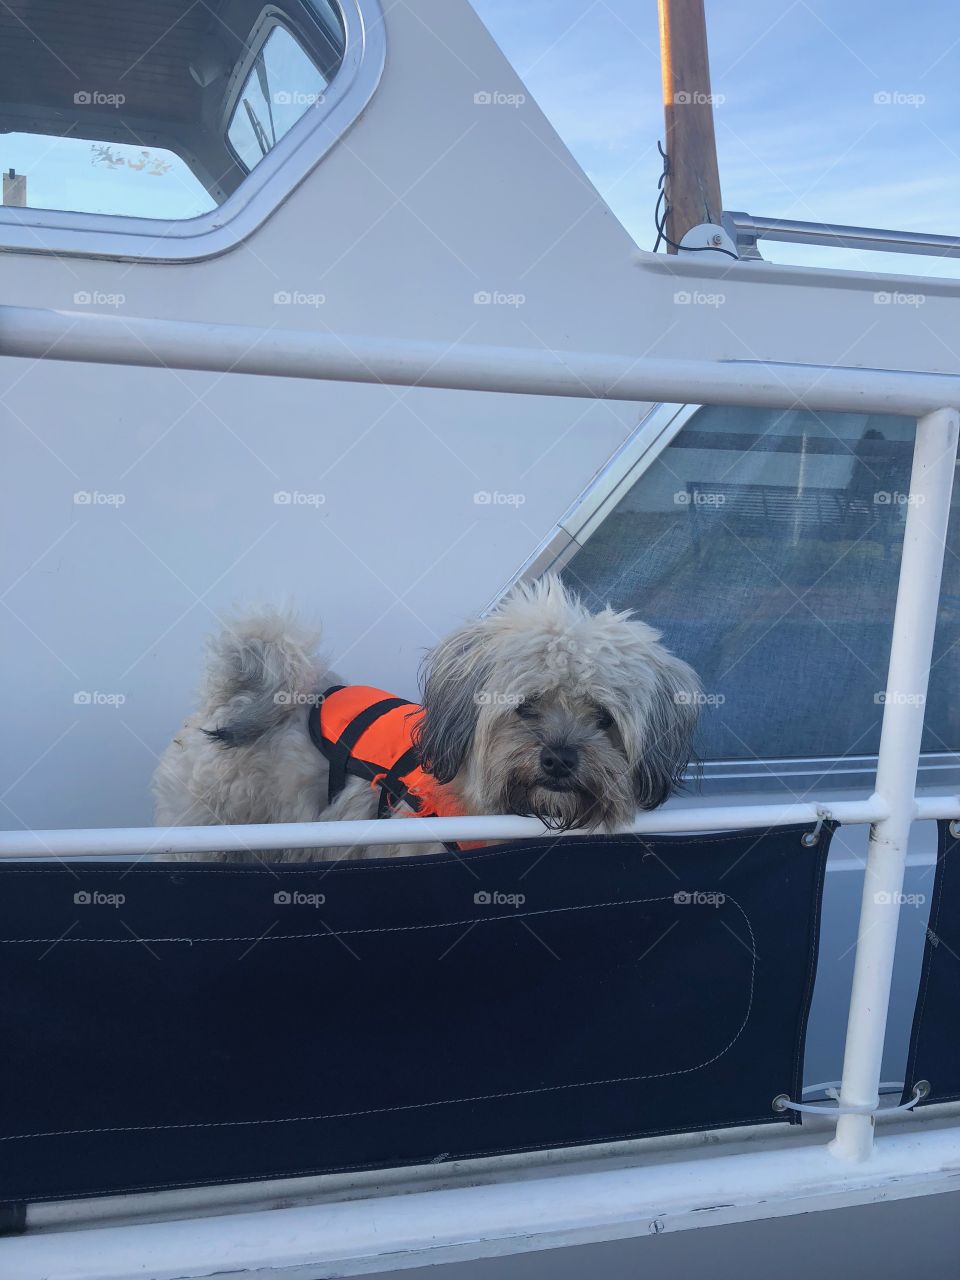 Sailor dog 